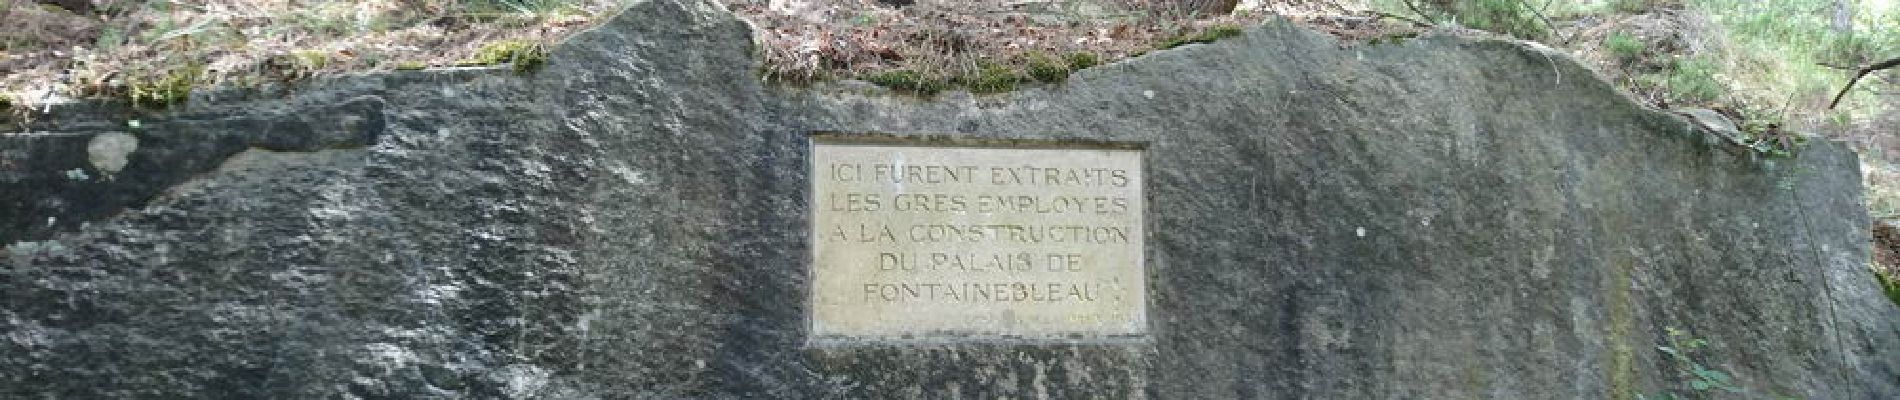 Point d'intérêt Fontainebleau - 06 - Une stèle en l'honneur des carriers - Photo